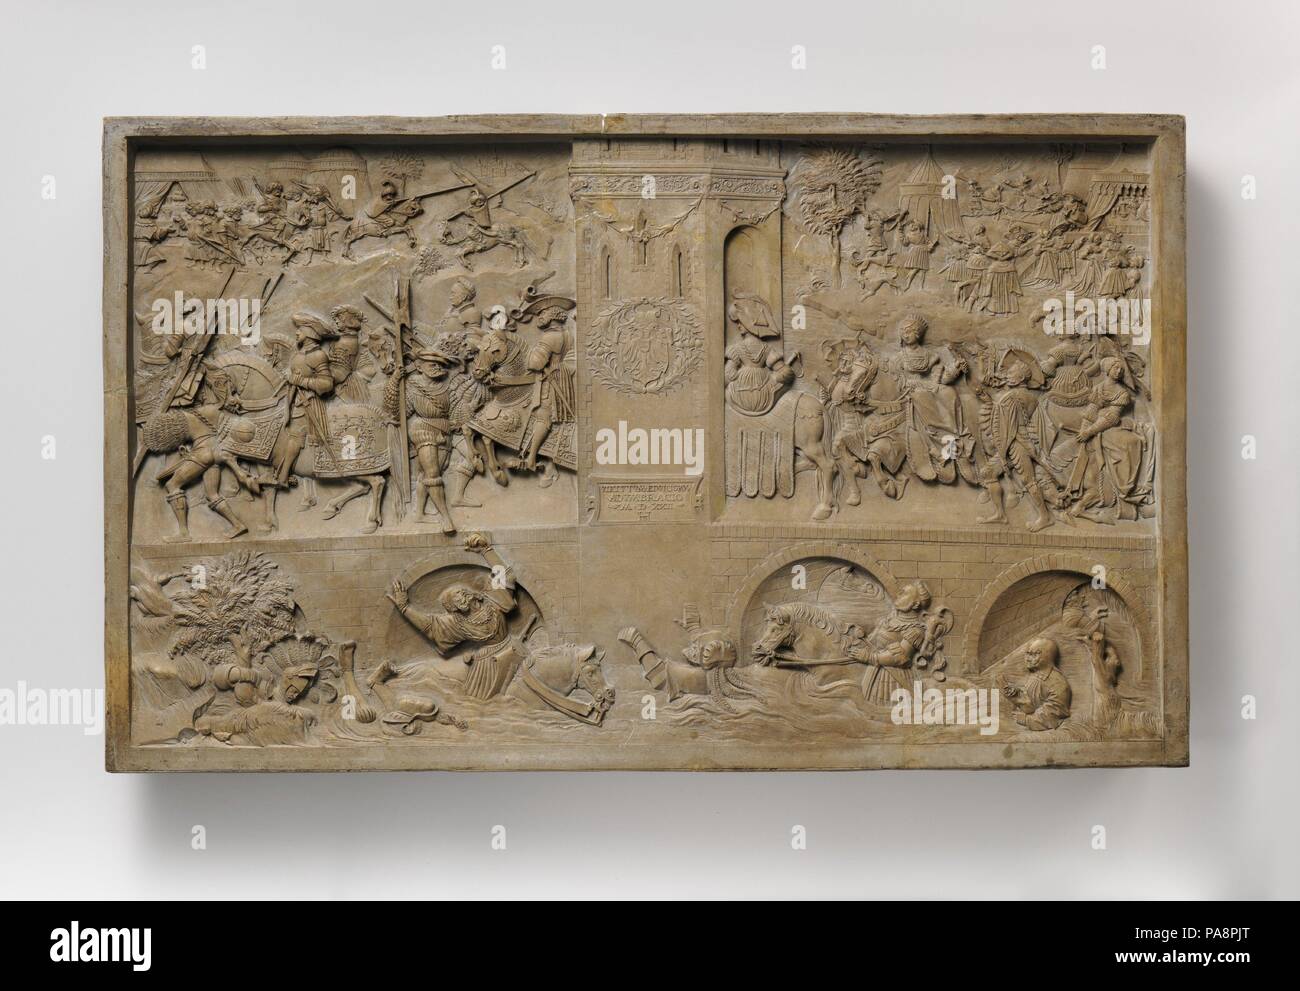 Allegoria della virtù e vizi presso la corte di Carlo V. Artista: Hans Daucher (tedesco, Ulm ca. 1485-1538 Stoccarda). Cultura: tedesco, probabilmente di Augsburg. Dimensioni: complessiva (conferma): 11 1/8 × 18 7/16 x 1 3/4 in. (28,3 × 46,8 × 4,4 cm). Data: ca. 1522. Unicità di fine esecuzione, e simbologia specifica per il suo proprietario la famiglia elevato questo relativamente umile materiale. Sacro Romano Imperatore Carlo V si siede a cavallo che portano una processione (compreso il suo defunto nonno Massimiliano e lontano parente di sangue Federico II) attraverso un ponte, risoluta e senza lasciarsi scoraggiare dal minaccioso nemico sol ottomano Foto Stock